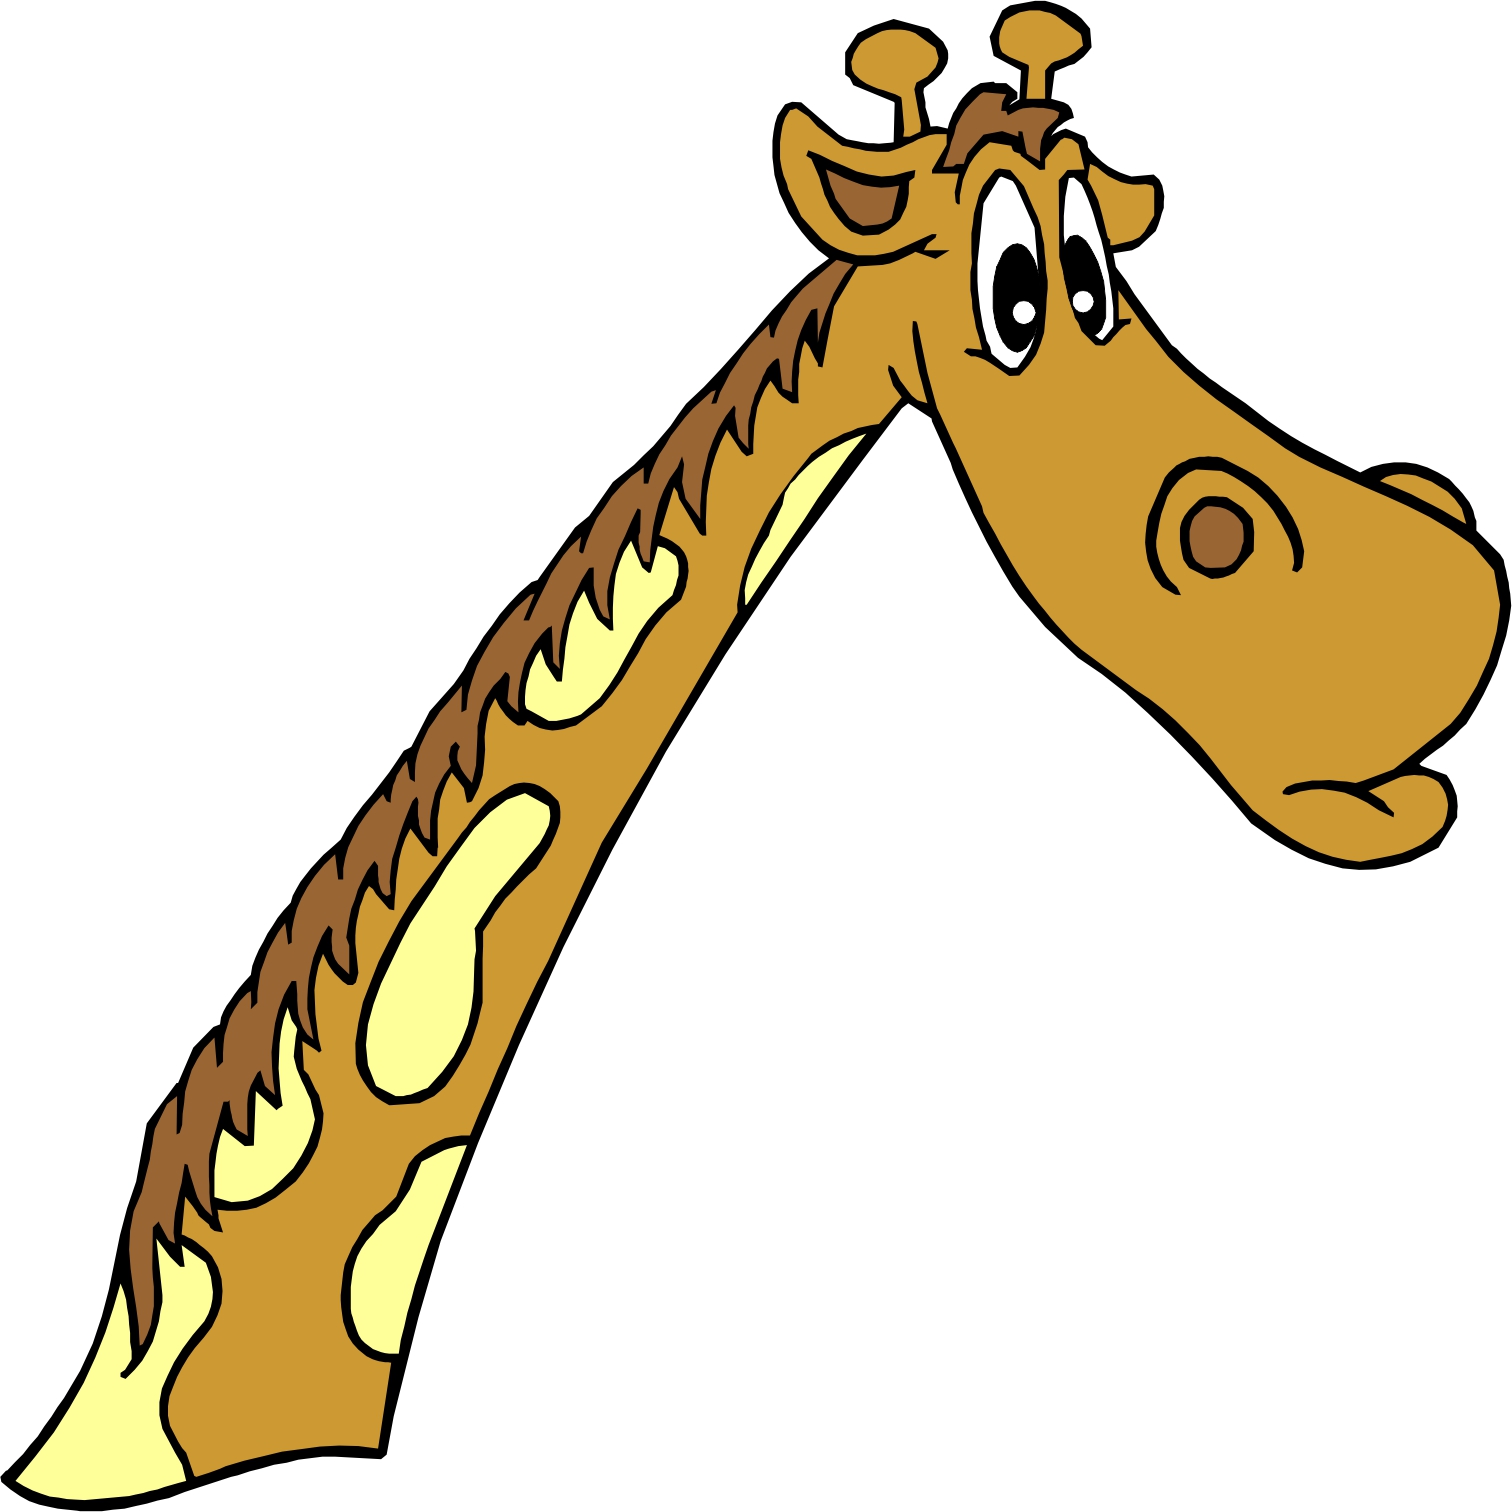 Cartoon Pic Of Giraffe - ClipArt Best